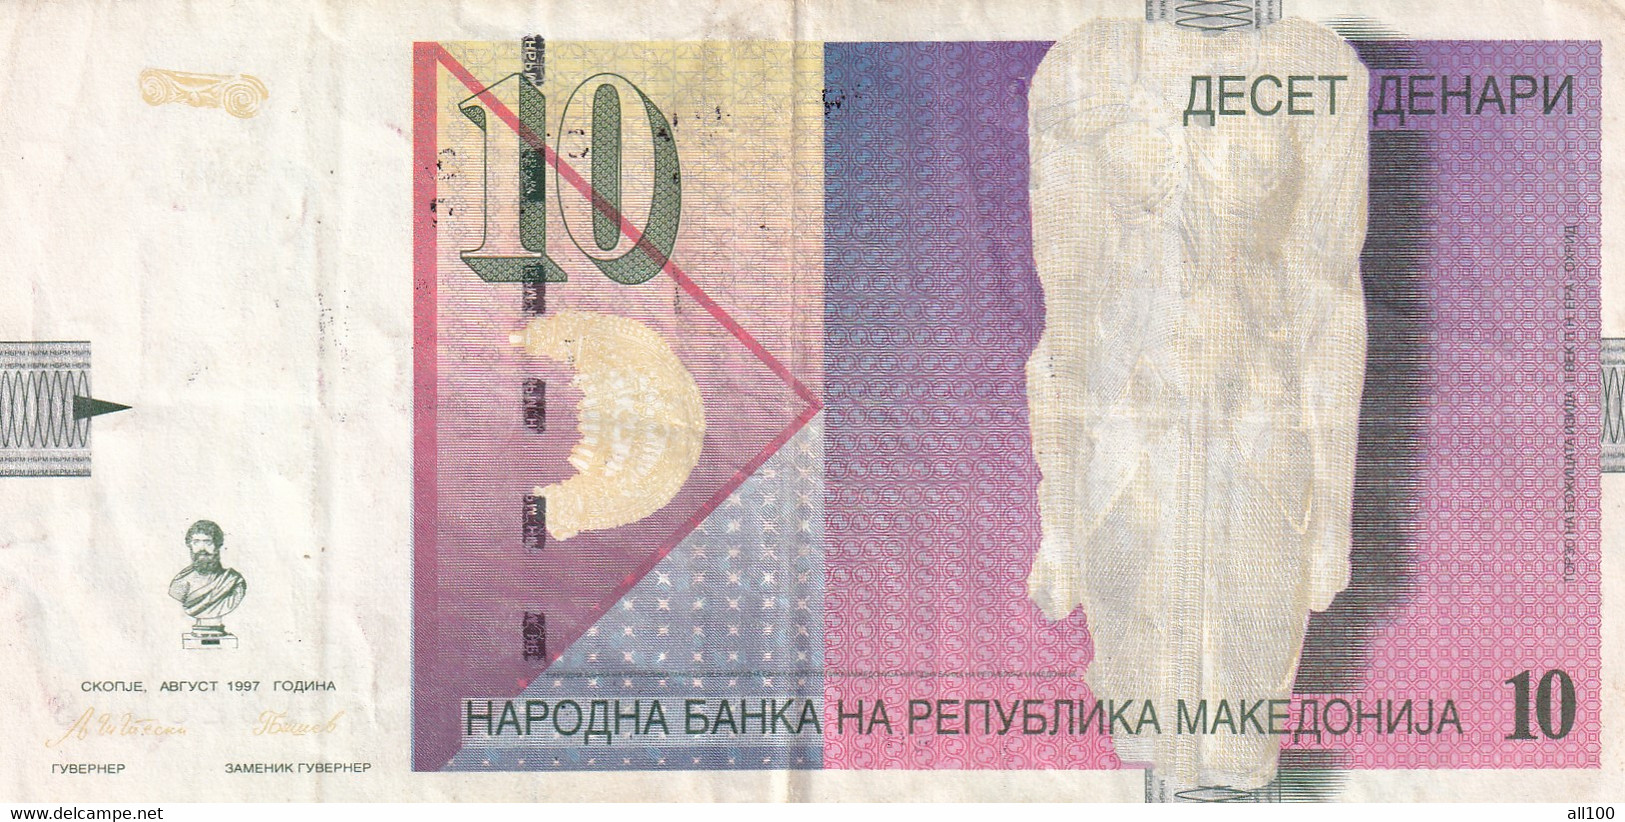 10 DENAR DECET DENARS TEN DENARS MACEDONIA 1997 NATIONAL BANK OF THE REPUBLIC OF MACEDONIA 626808 - North Macedonia